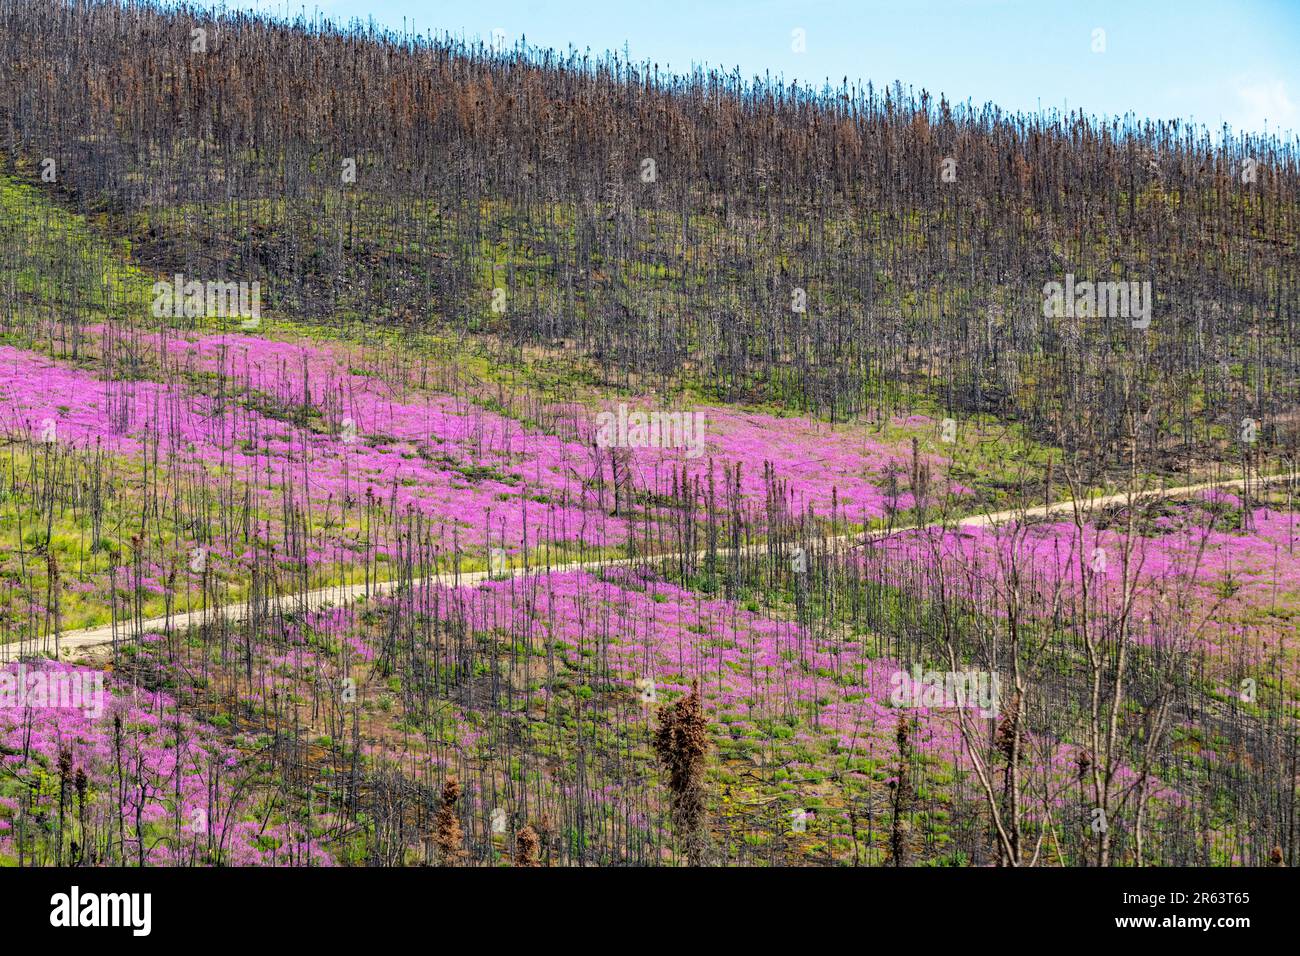 Wilde Feuerwebepflanzen, Blumen, die im Sommer nach einem Waldbrand im wilden Yukon Territory, Kanada, zu sehen waren, mit einer Straße, die durch das rosa violette Gebiet verläuft Stockfoto